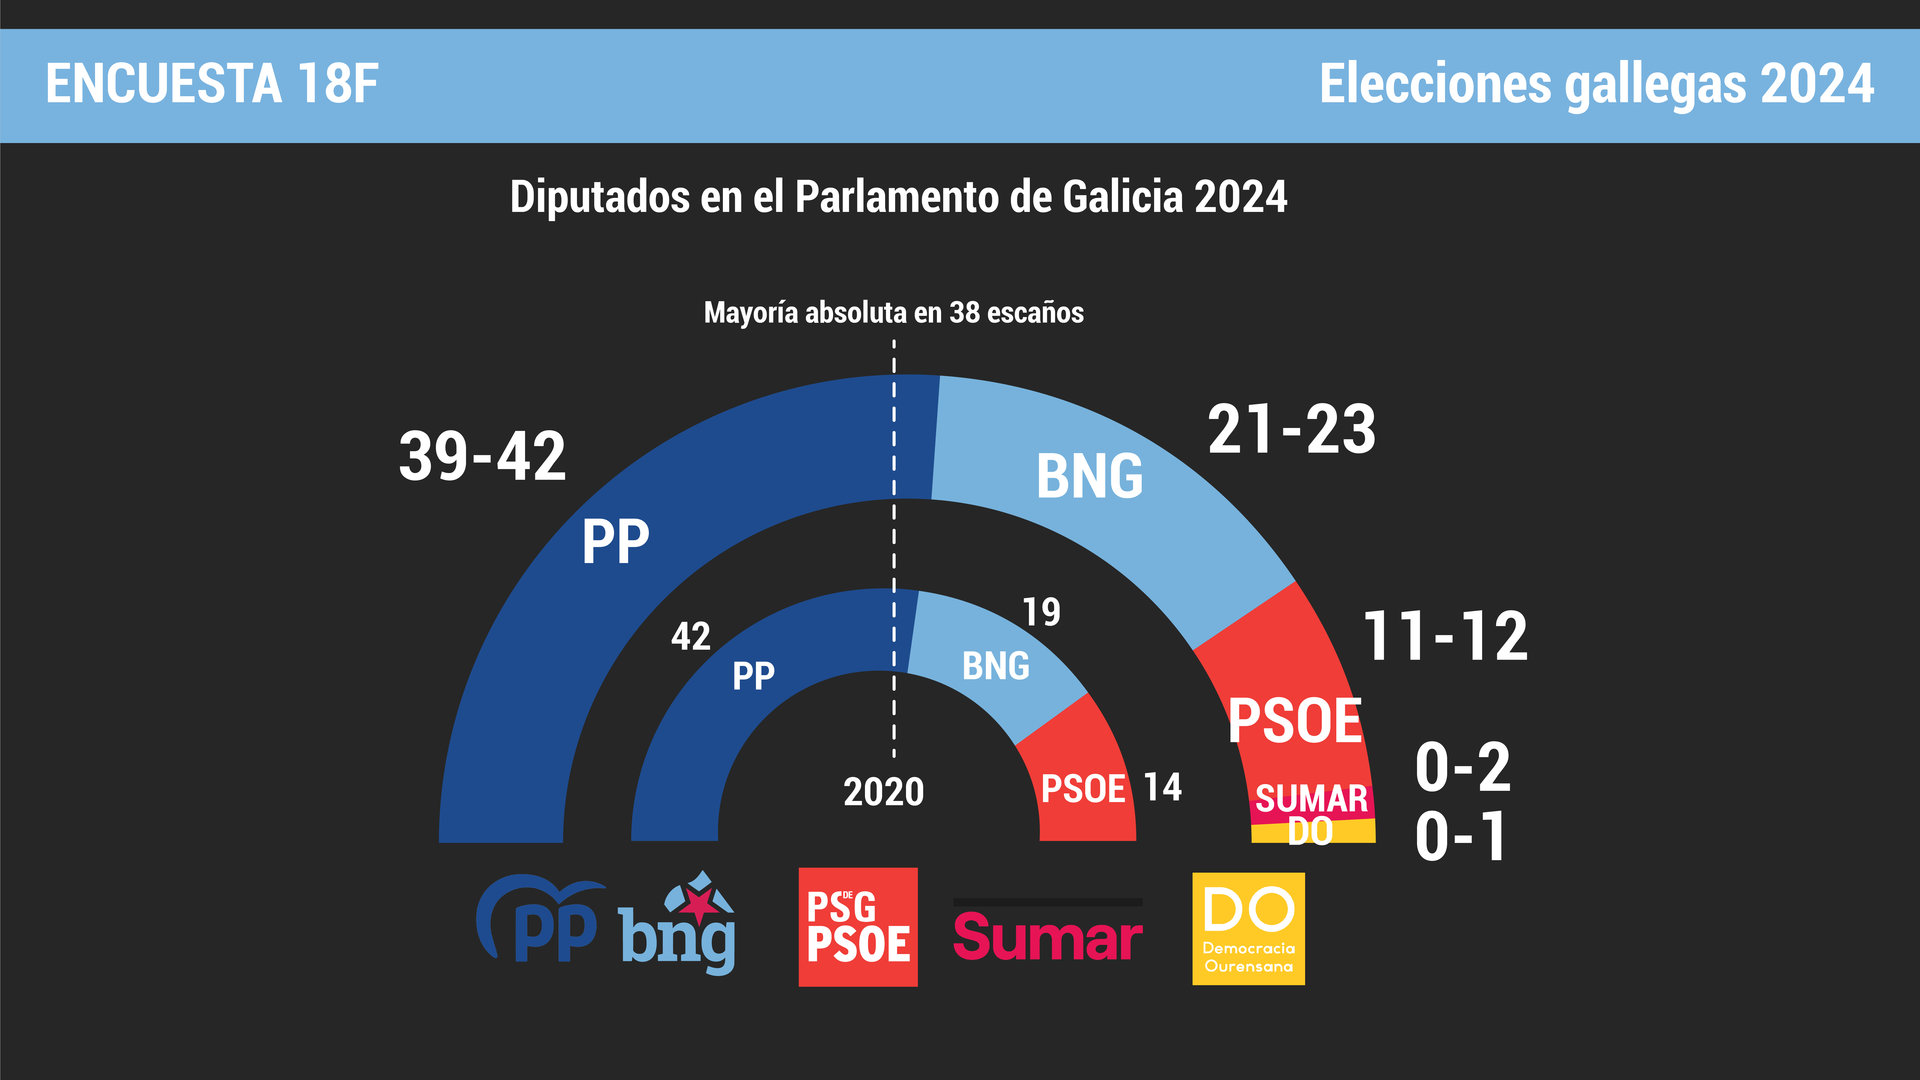 Diputados en el Parlamento de Galicia según la encuesta 
 de las elecciones gallegas 18F de Atlántico.